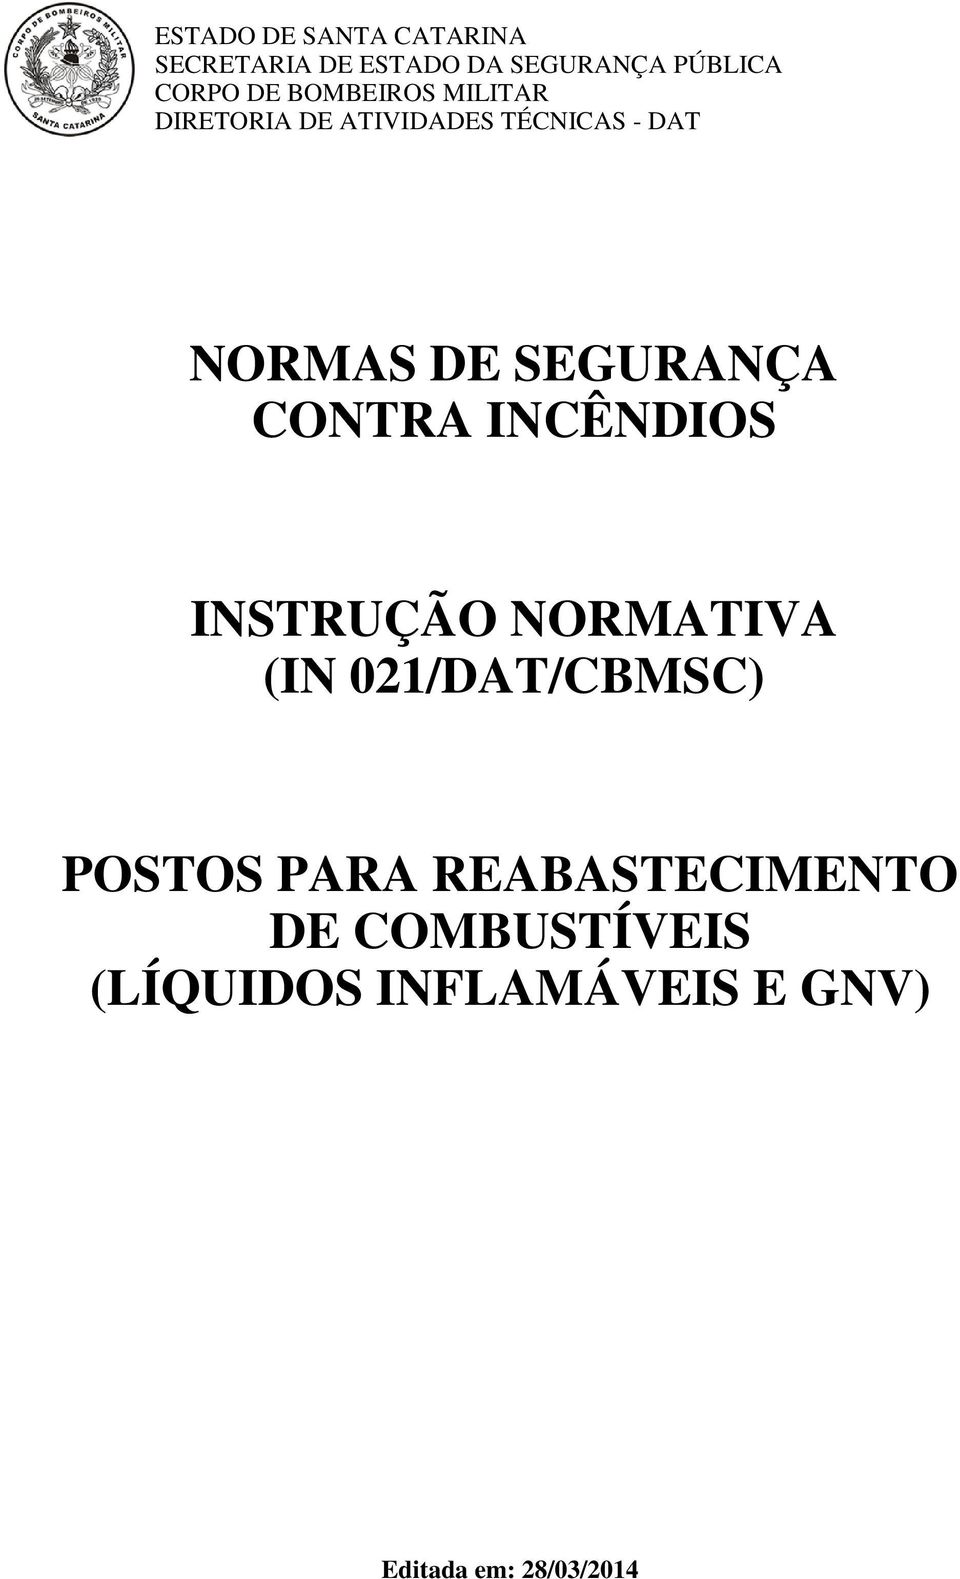 SEGURANÇA CONTRA INCÊNDIOS INSTRUÇÃO NORMATIVA (IN 021/DAT/CBMSC) POSTOS